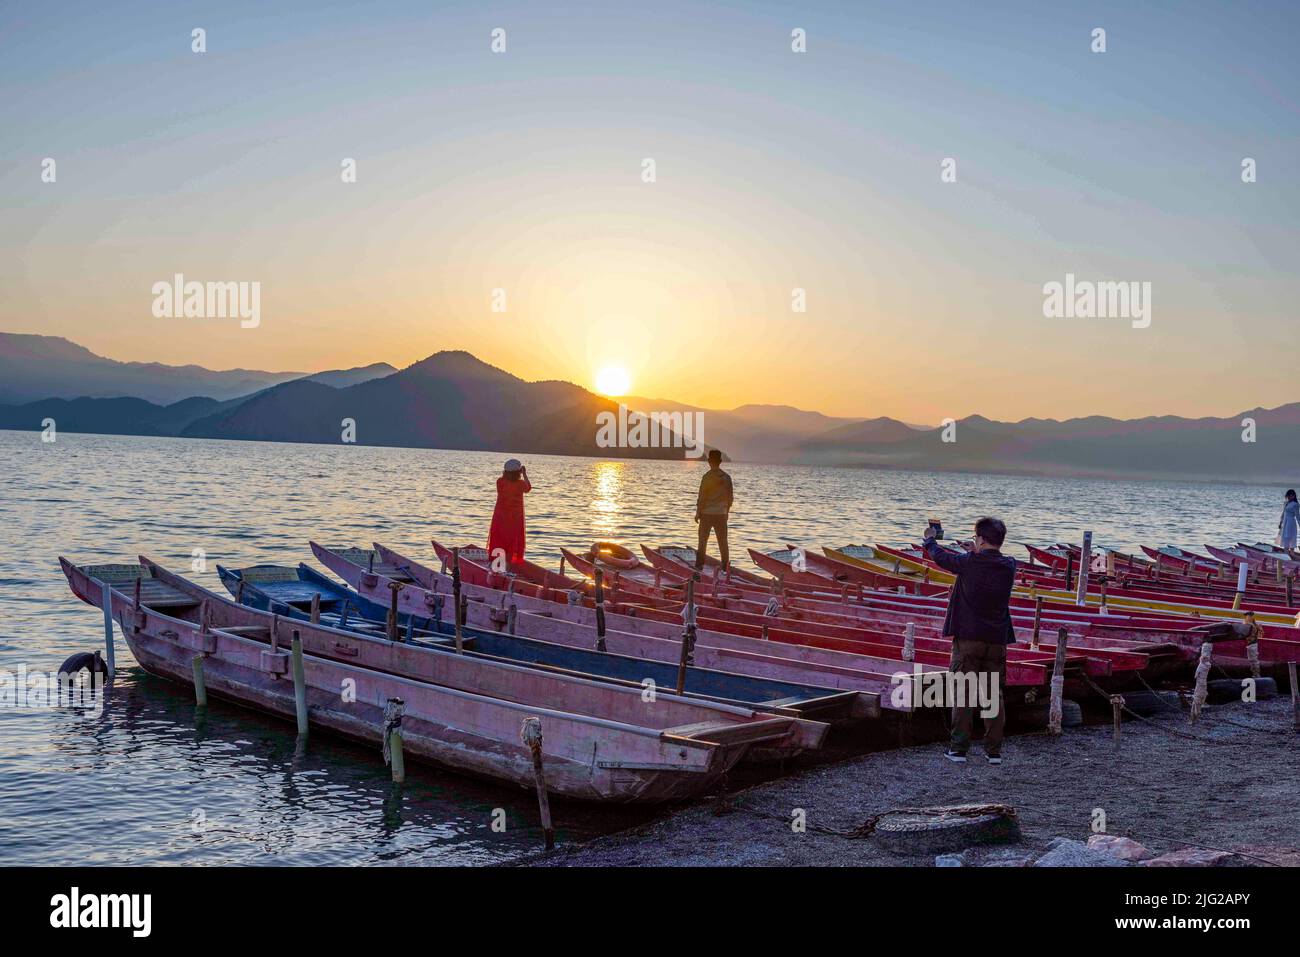 LIJIANG, CHINA - JULY 7, 2022 - Tourists visit the bank of Lugu Lake in Lijiang, Yunnan Province, China, July 7, 2022. Lugu Lake, known as the 'Pearl Stock Photo